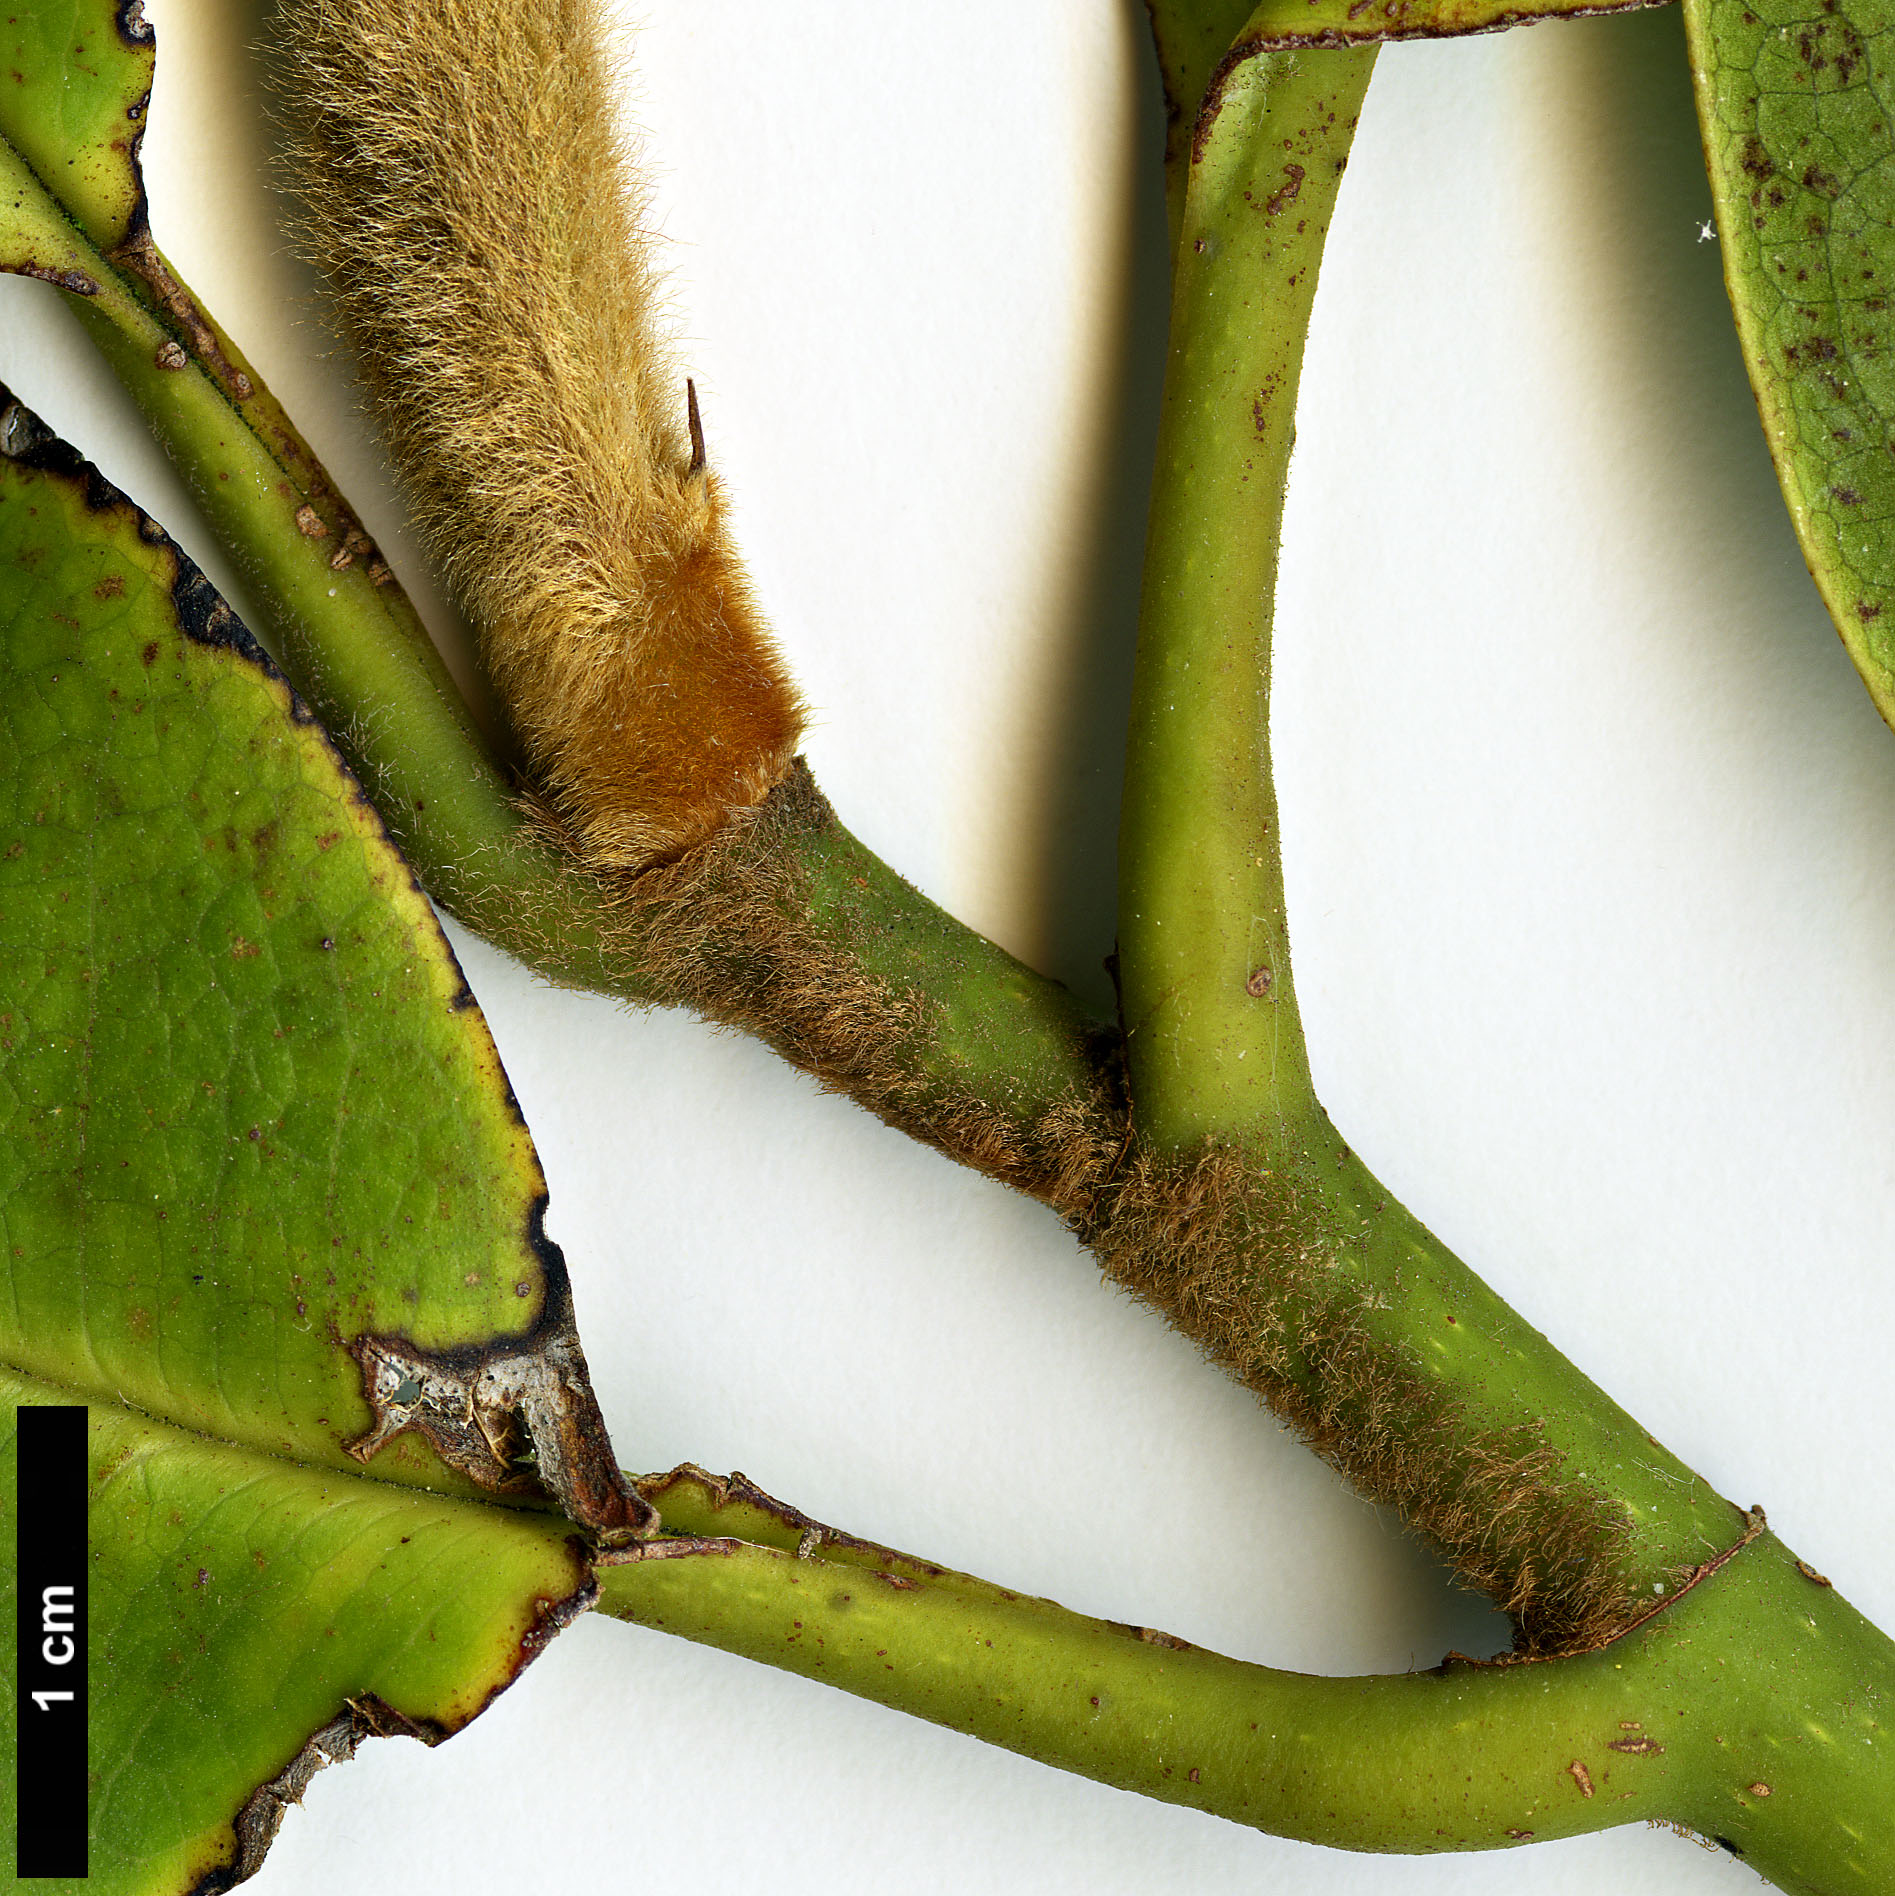 High resolution image: Family: Magnoliaceae - Genus: Magnolia - Taxon: fulva